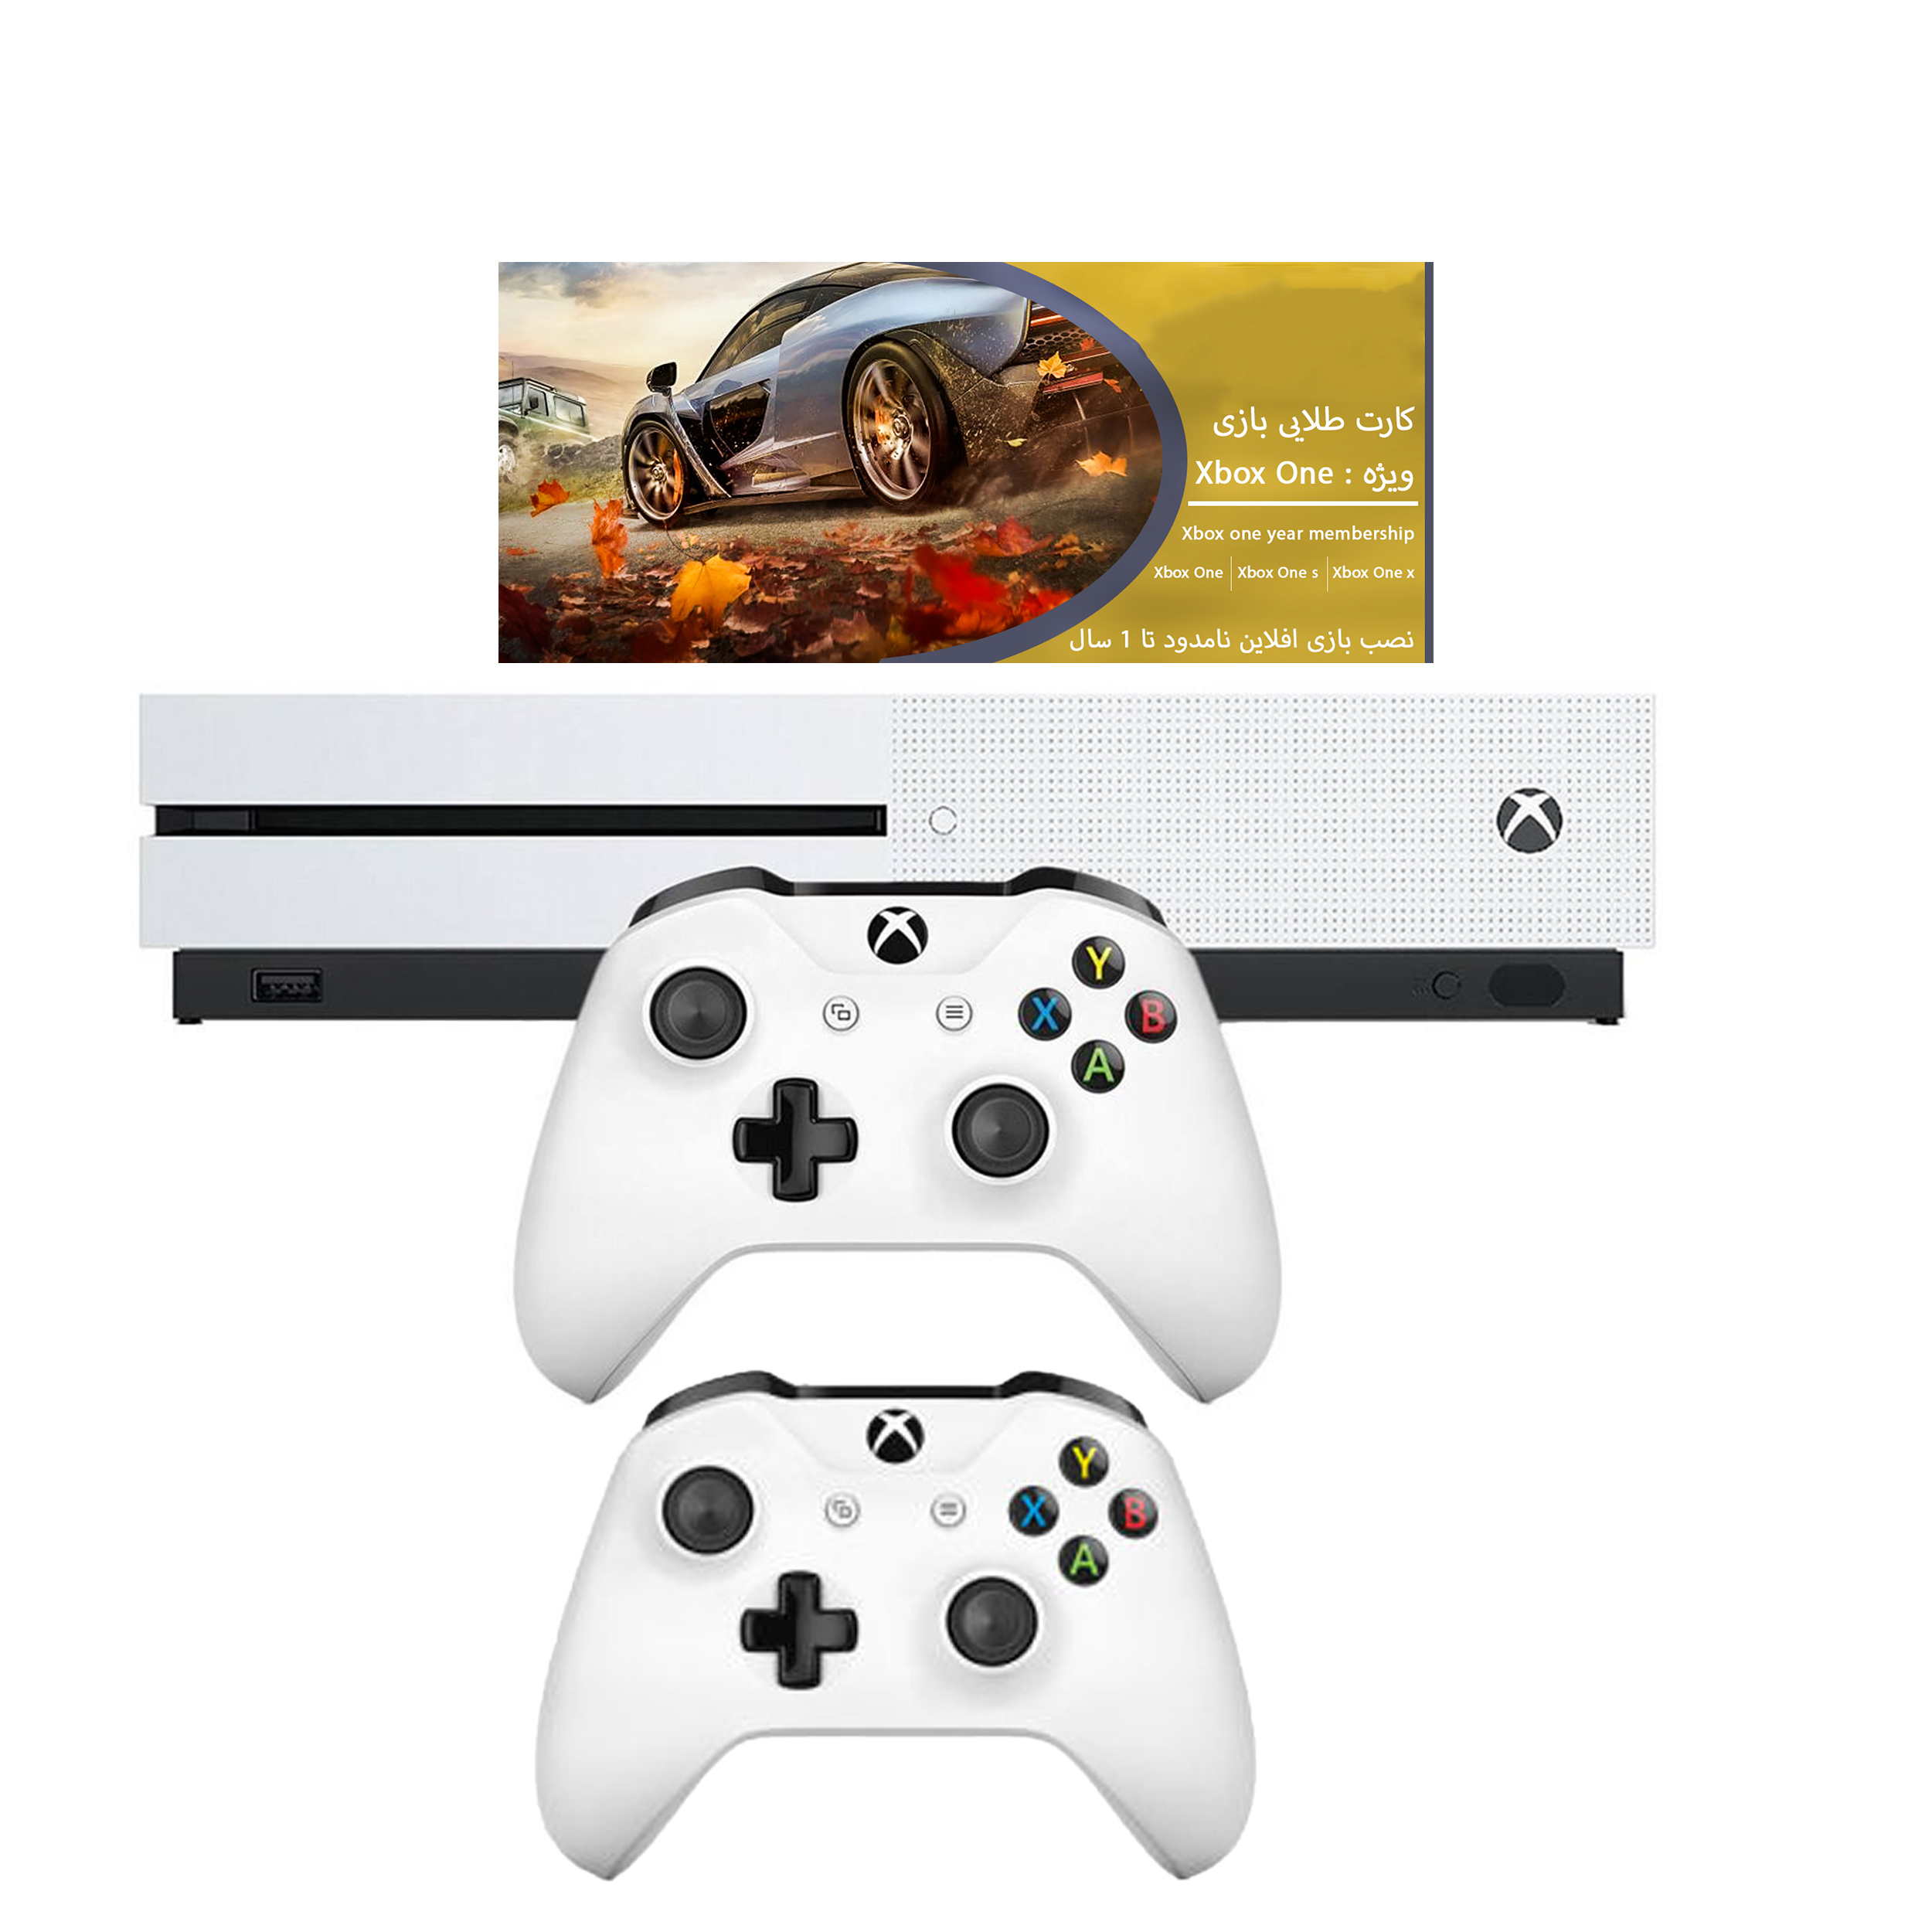 مجموعه کنسول بازی مایکروسافت مدل Xbox One S ظرفیت 1 ترابایت به همراه 20 عدد بازی و دسته اضافه